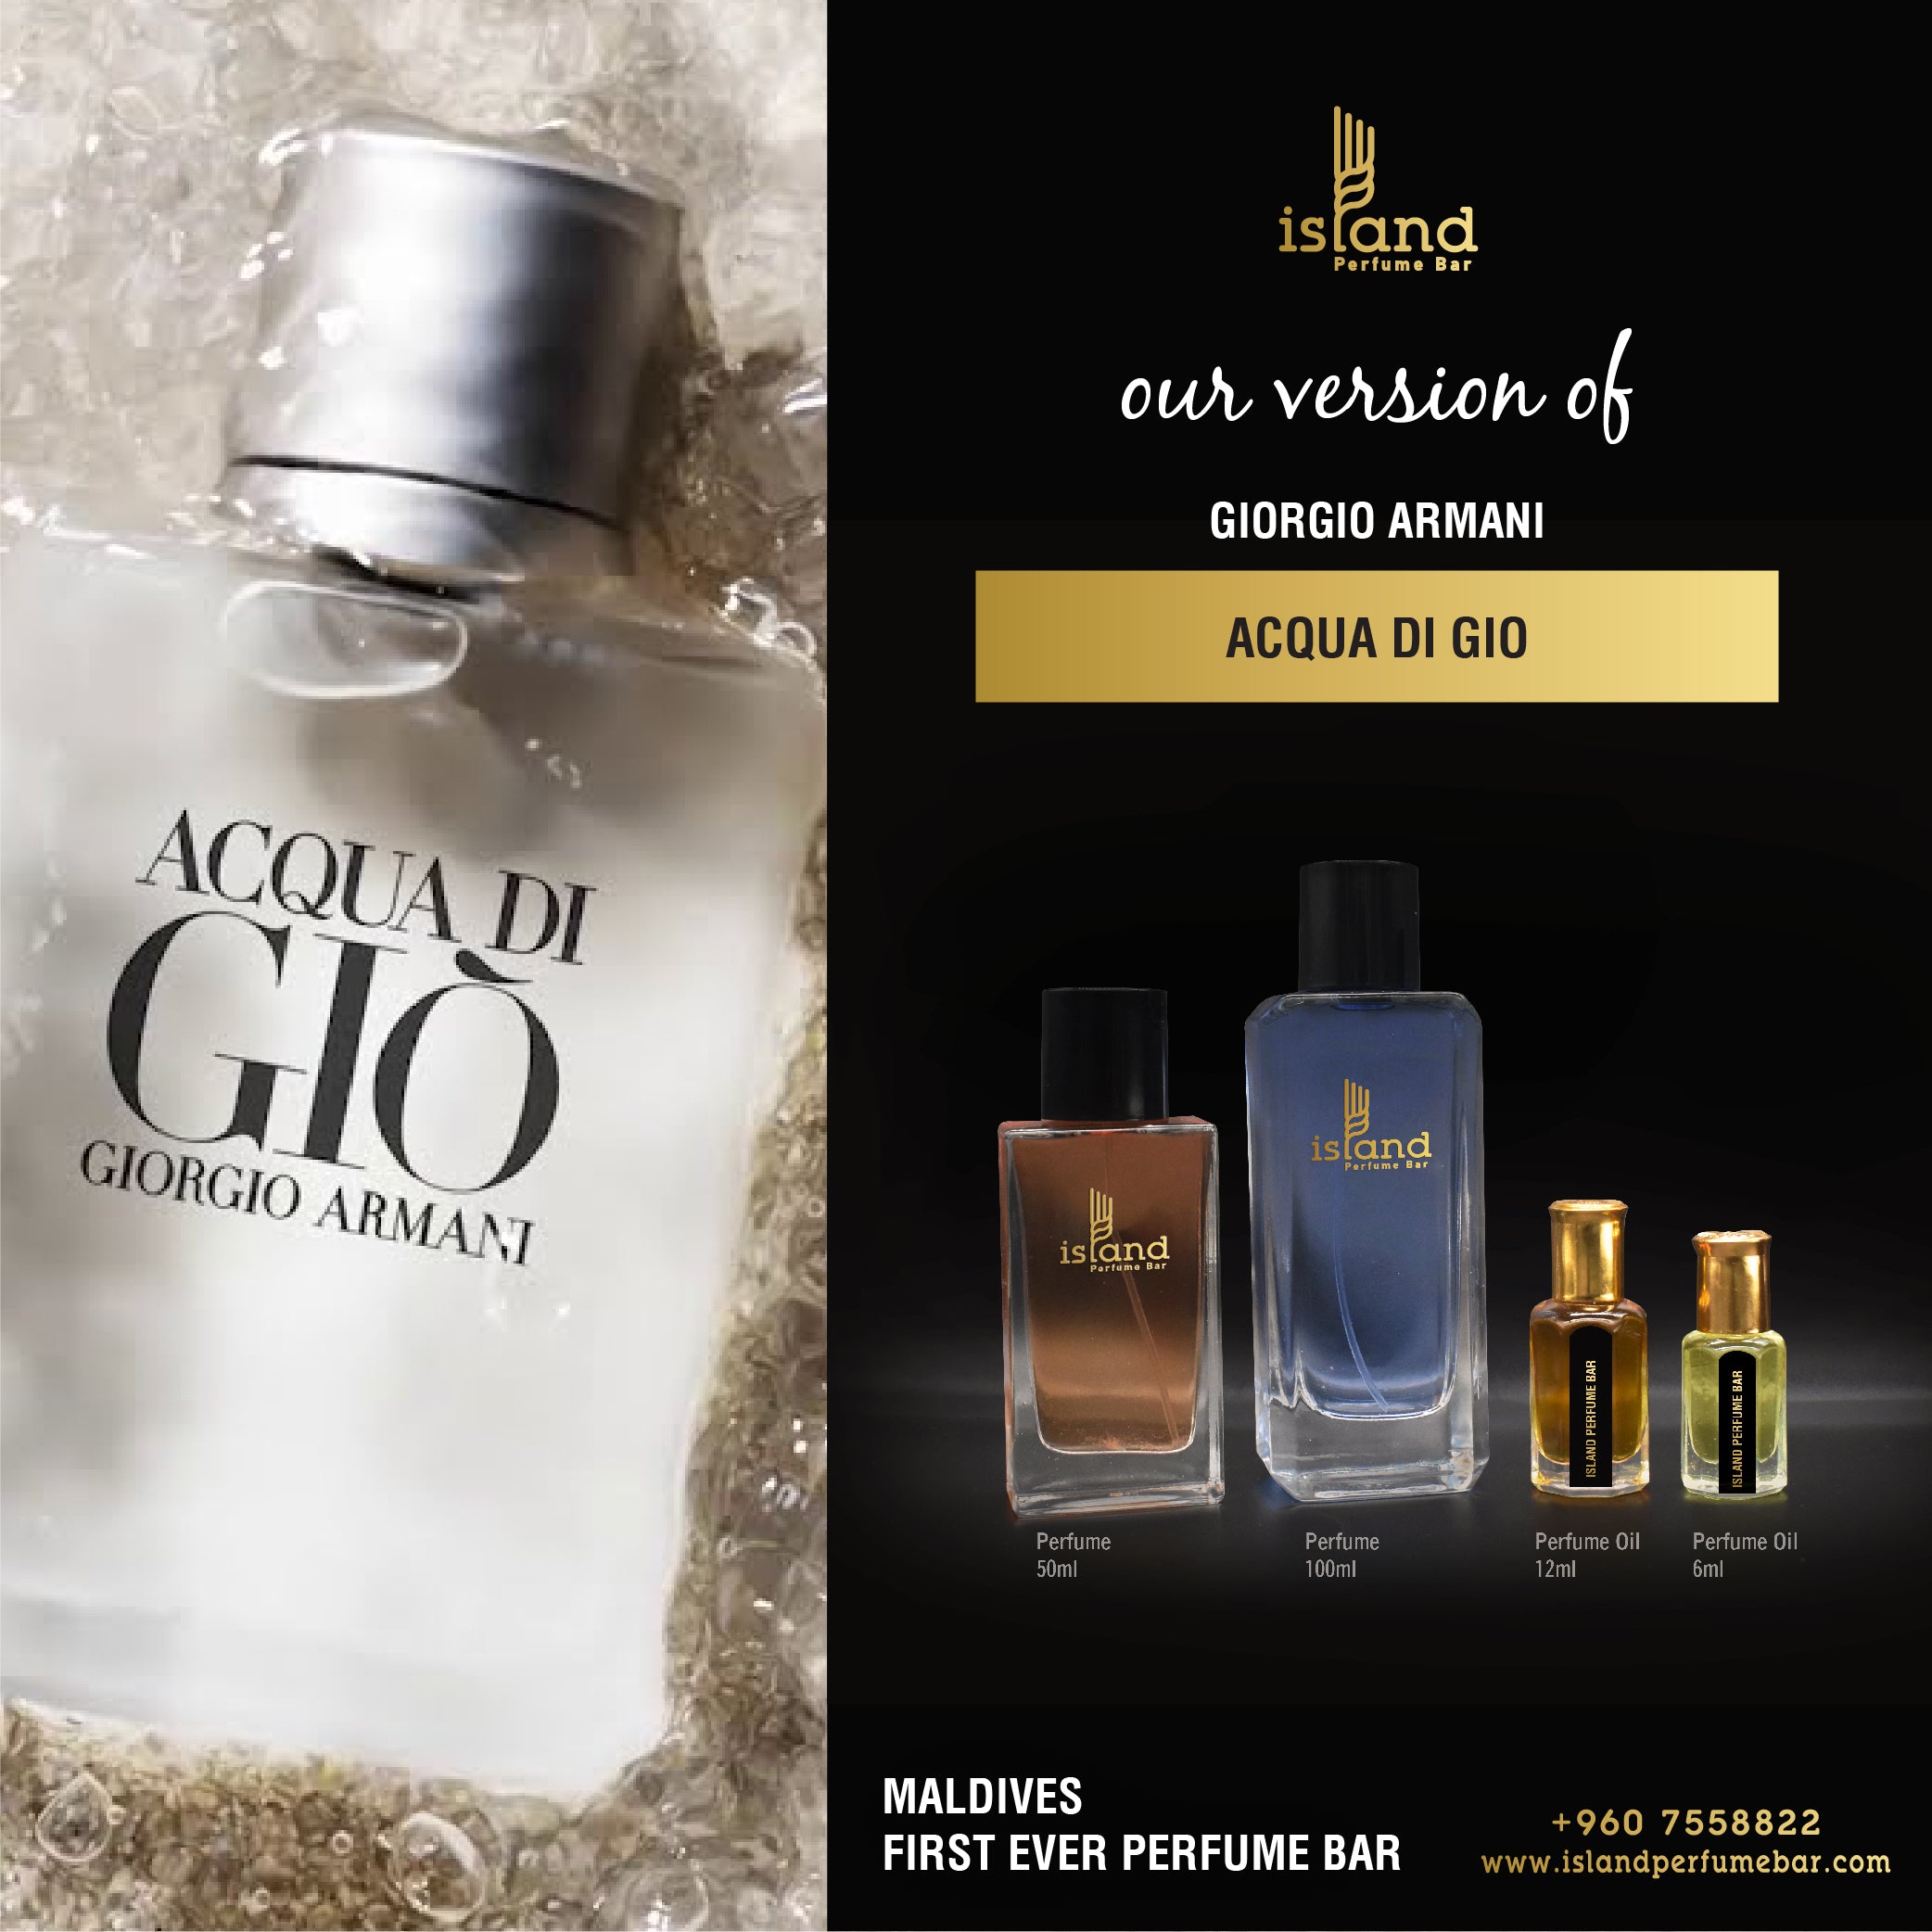 Louis Vuitton - Imagination for Man - A++ Louis Vuitton Premium Perfume Oils